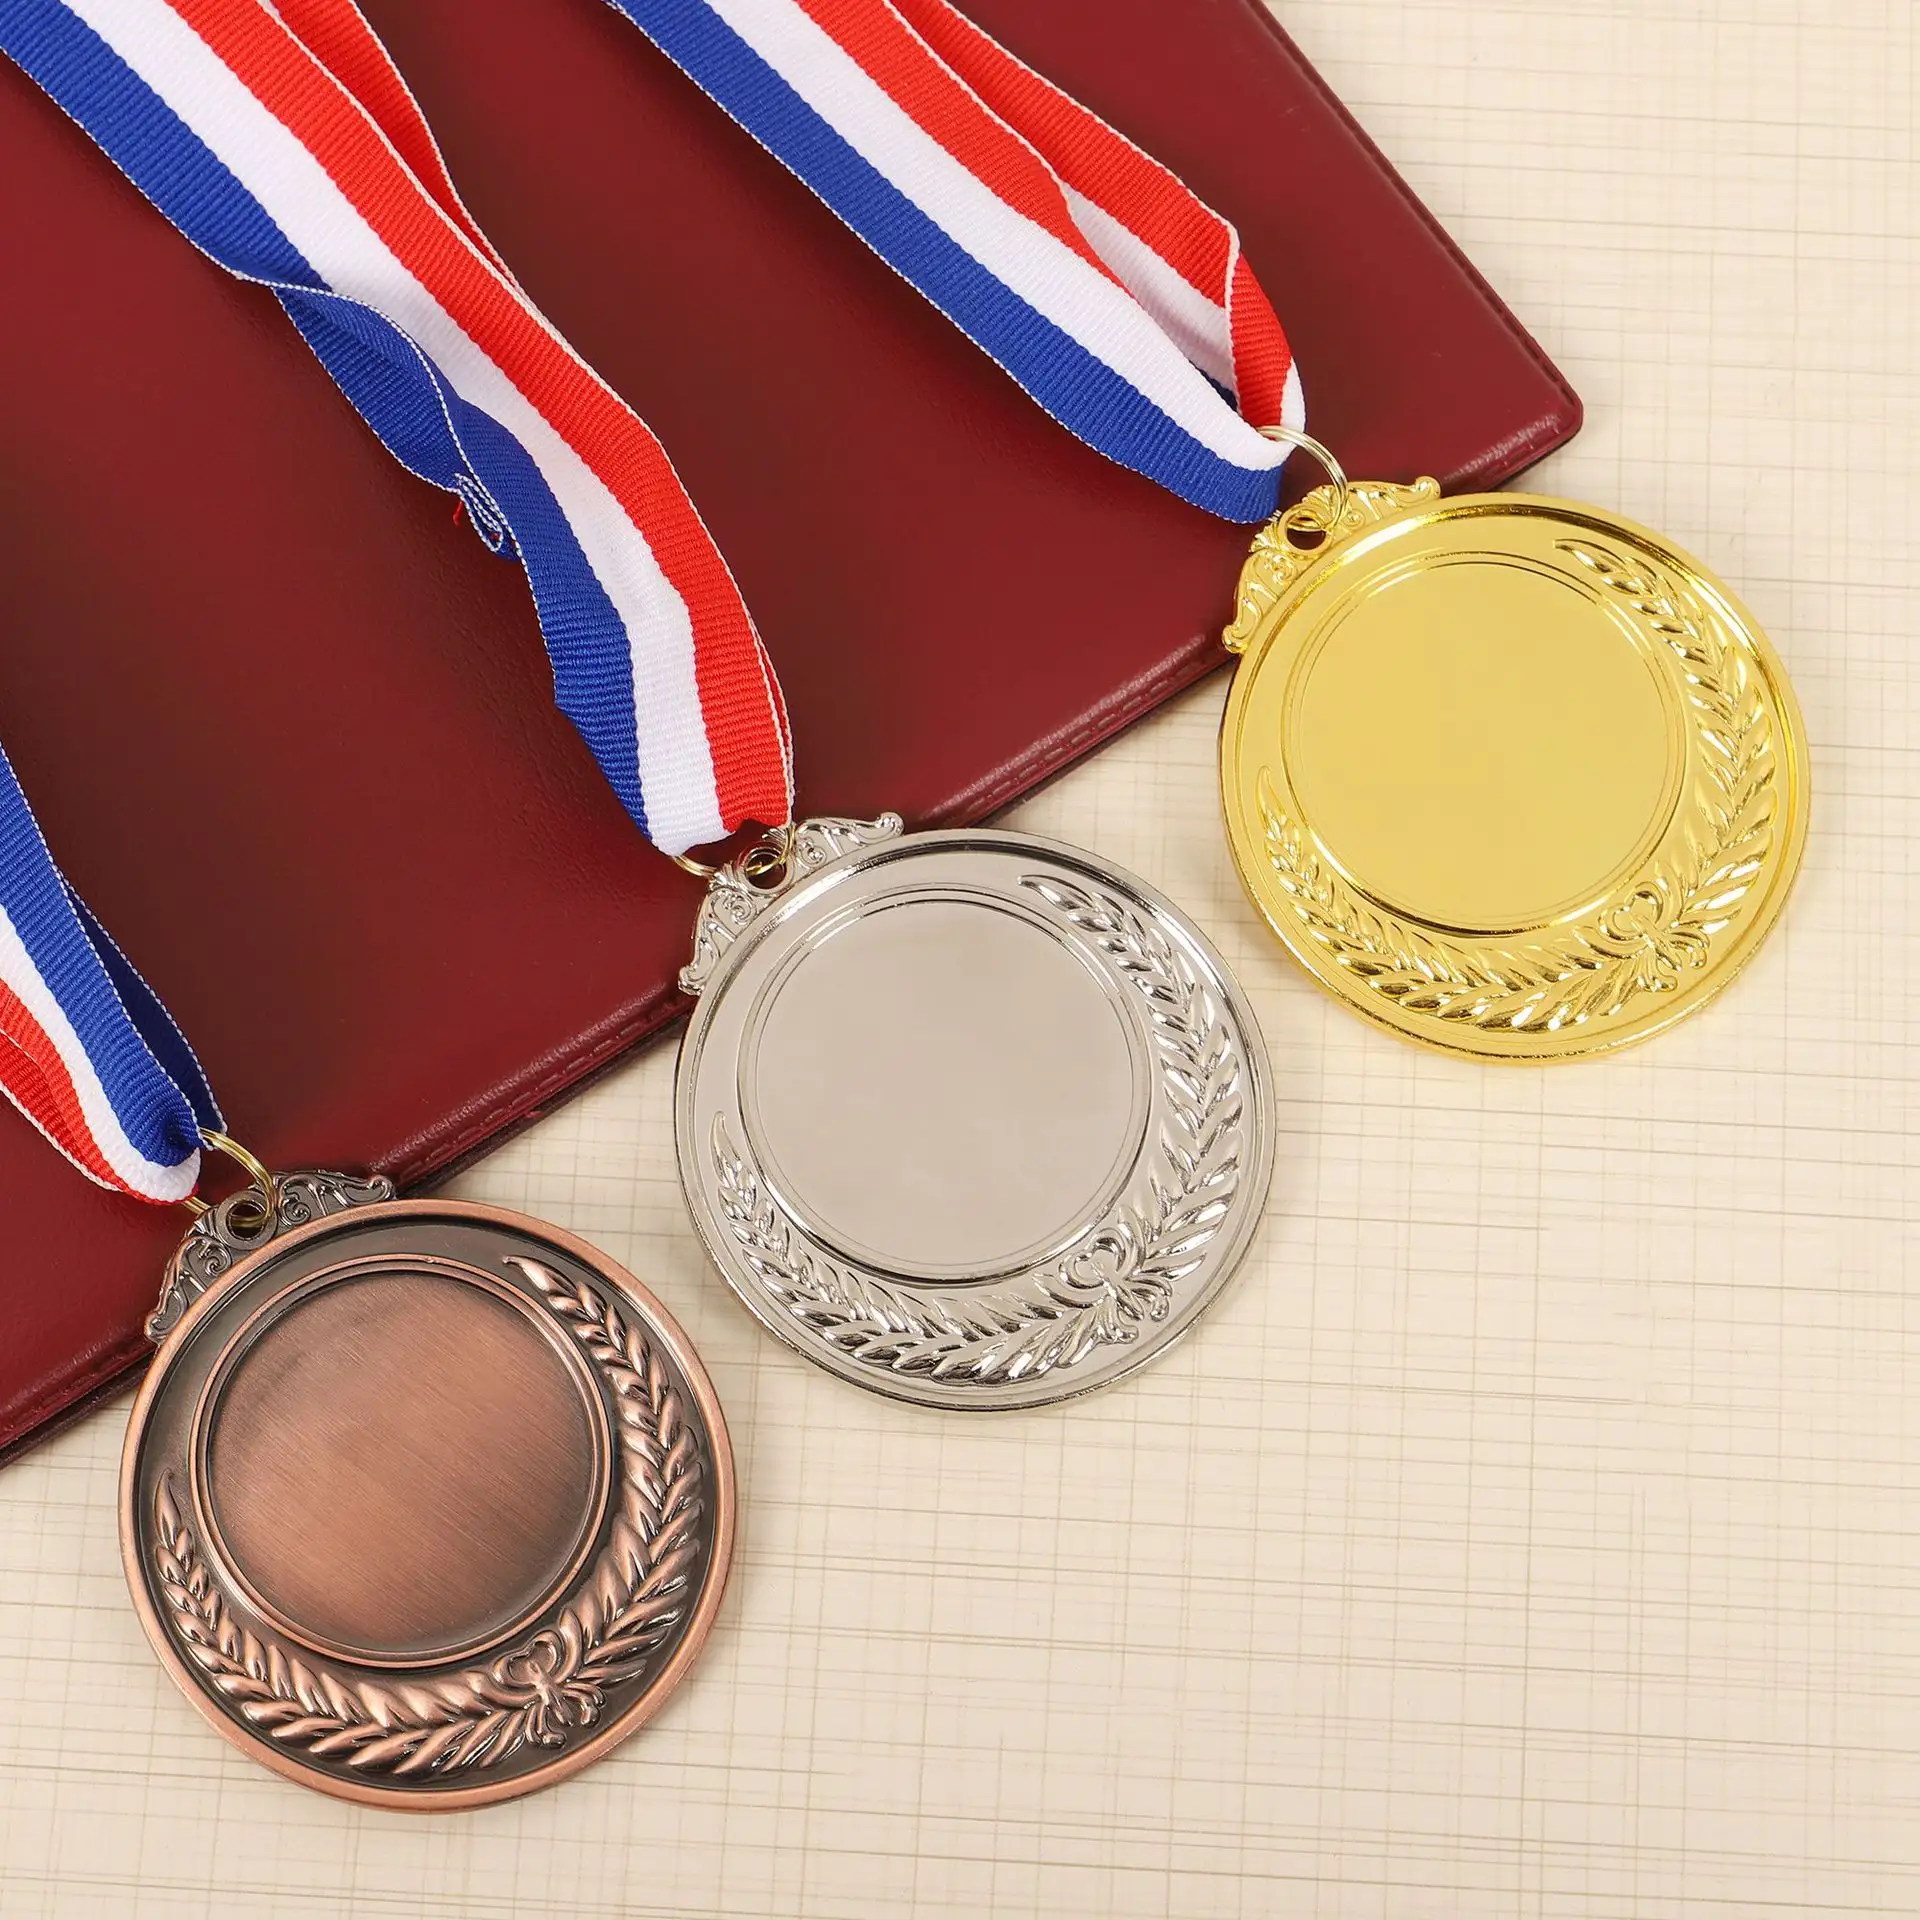 Nuova maratona vuota creativa medaglia commemorativa giochi all'ingrosso medaglia d'oro lamina di metallo personalizzato